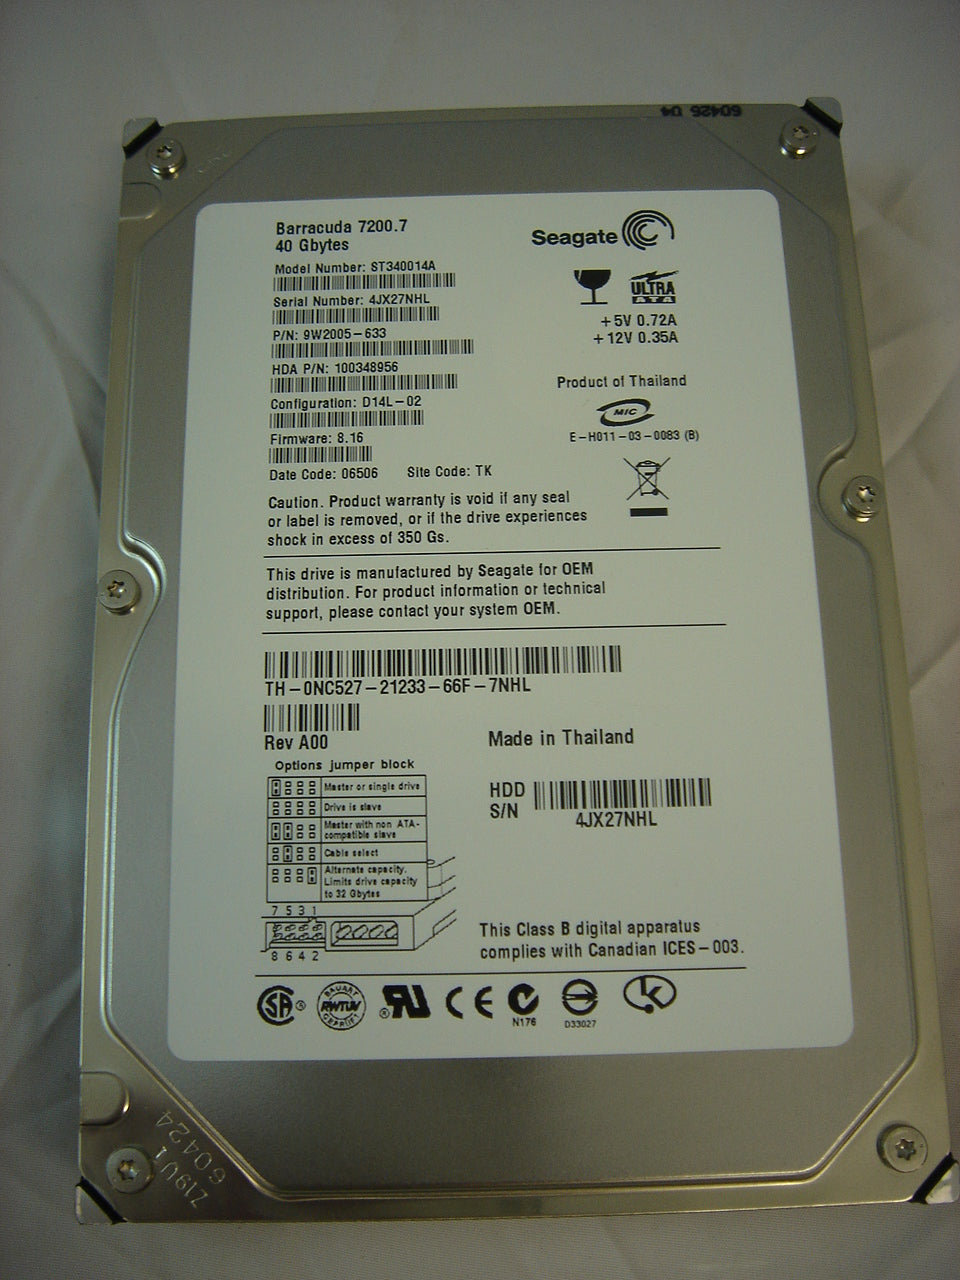 9W2005-633 - Seagate Dell 40Gb IDE 7200rpm 3.5in HDD - Refurbished